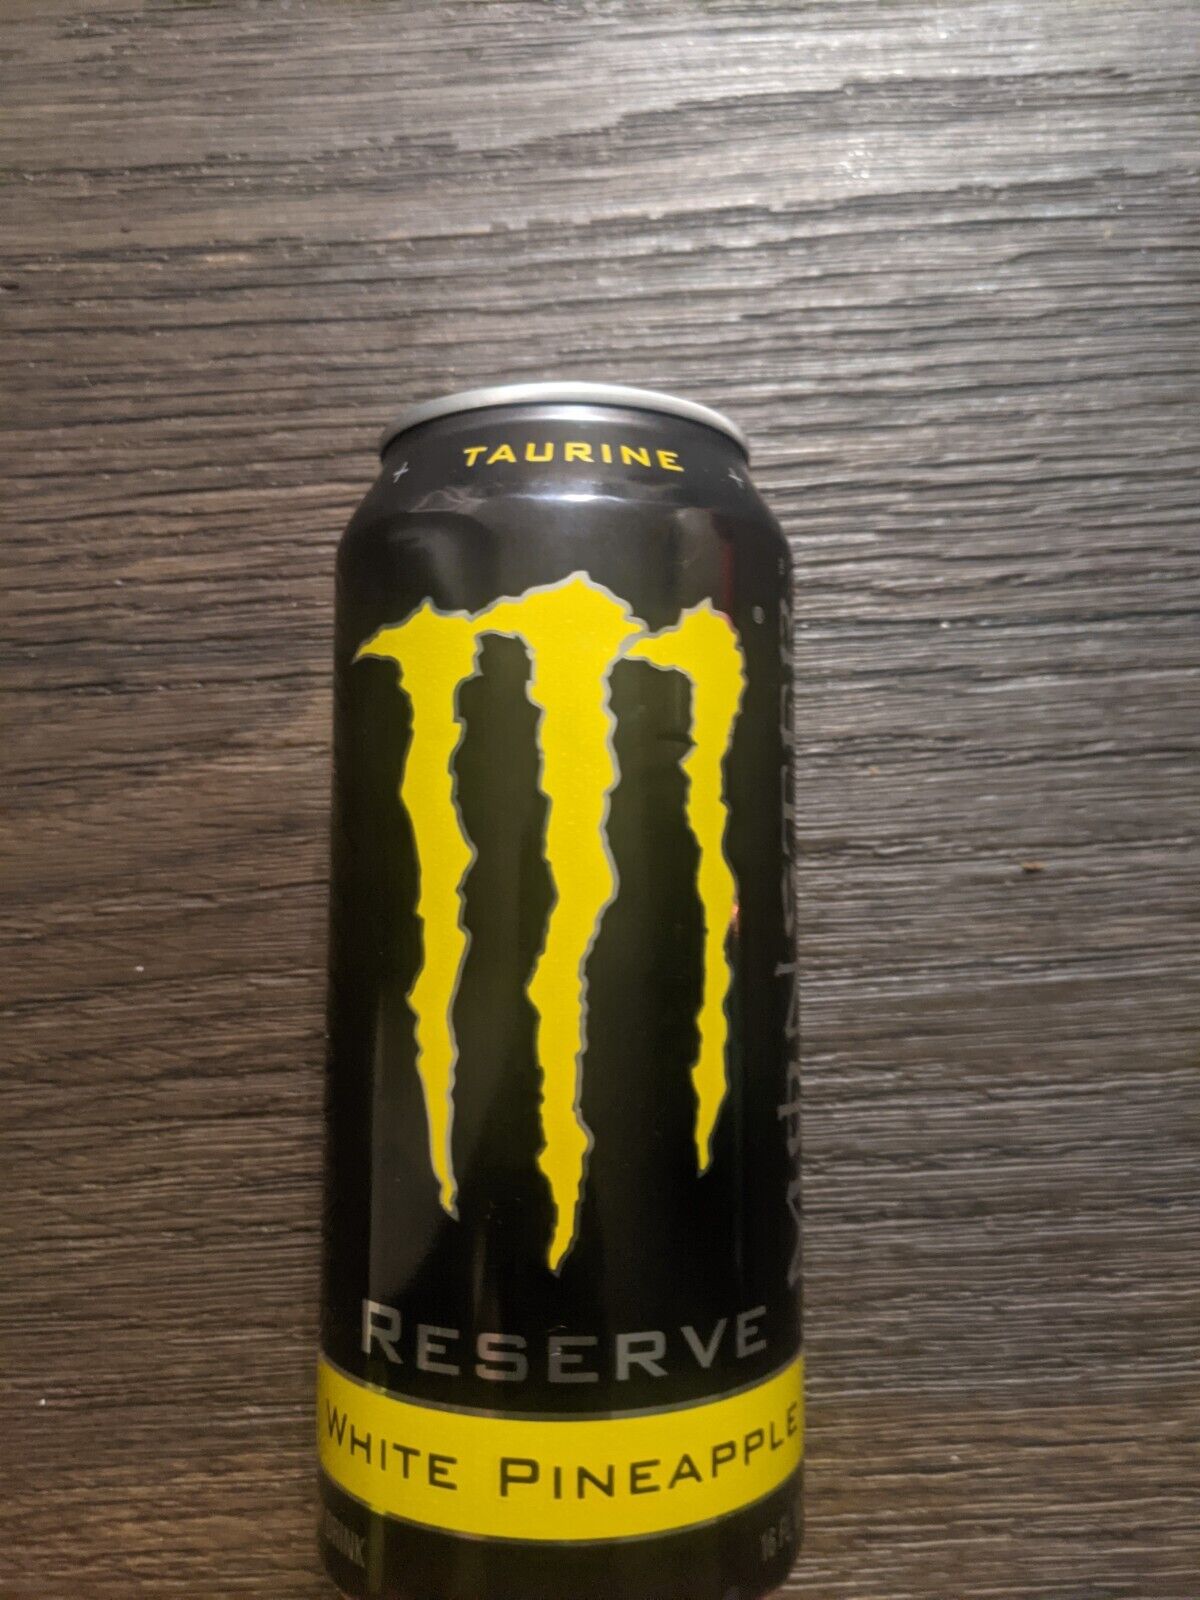 Monster energy drink White Pineapple 8 pack